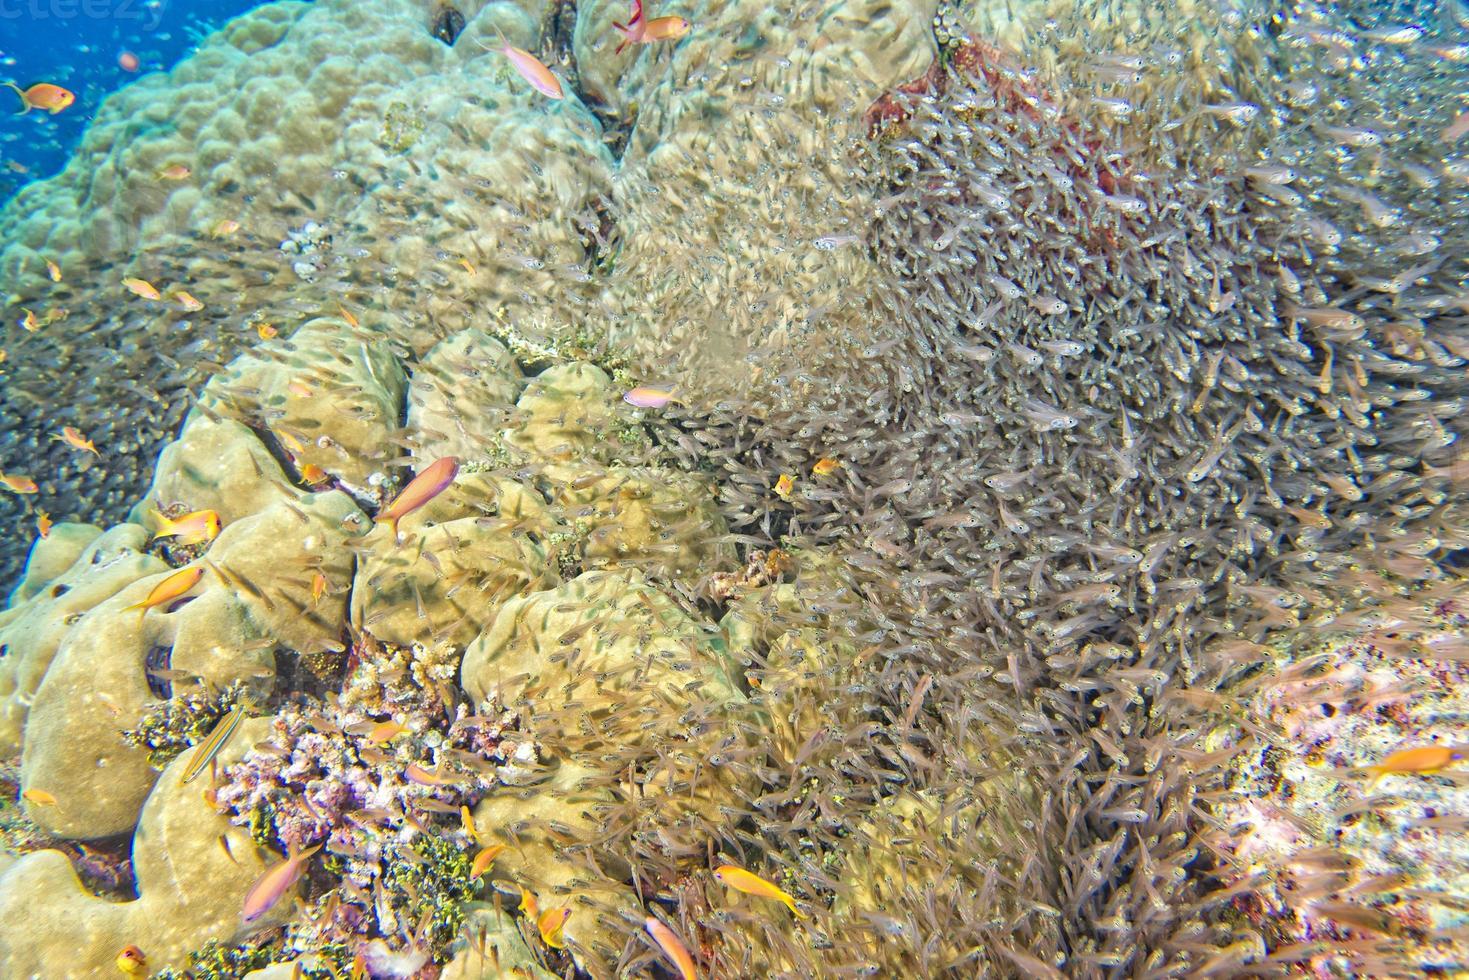 peixes de vidro bola de isca gigante movendo-se debaixo d'água foto